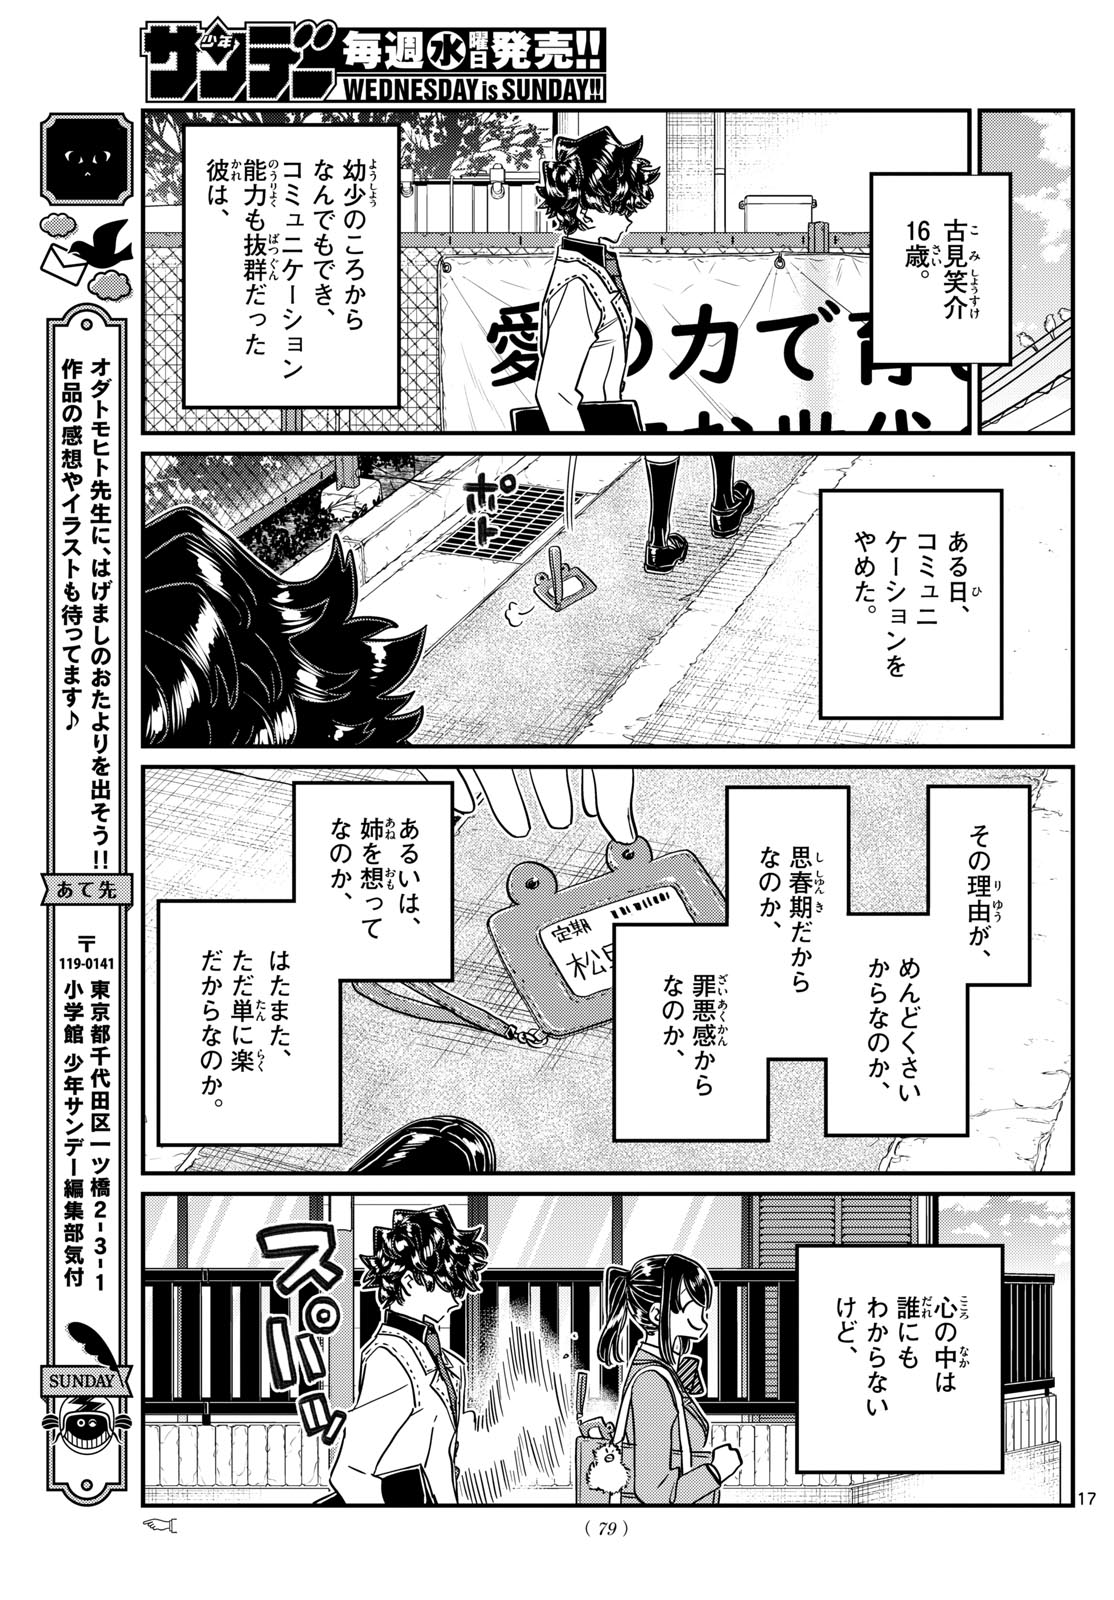 Komi-san wa Komyushou Desu - Chapter 462 - Page 17